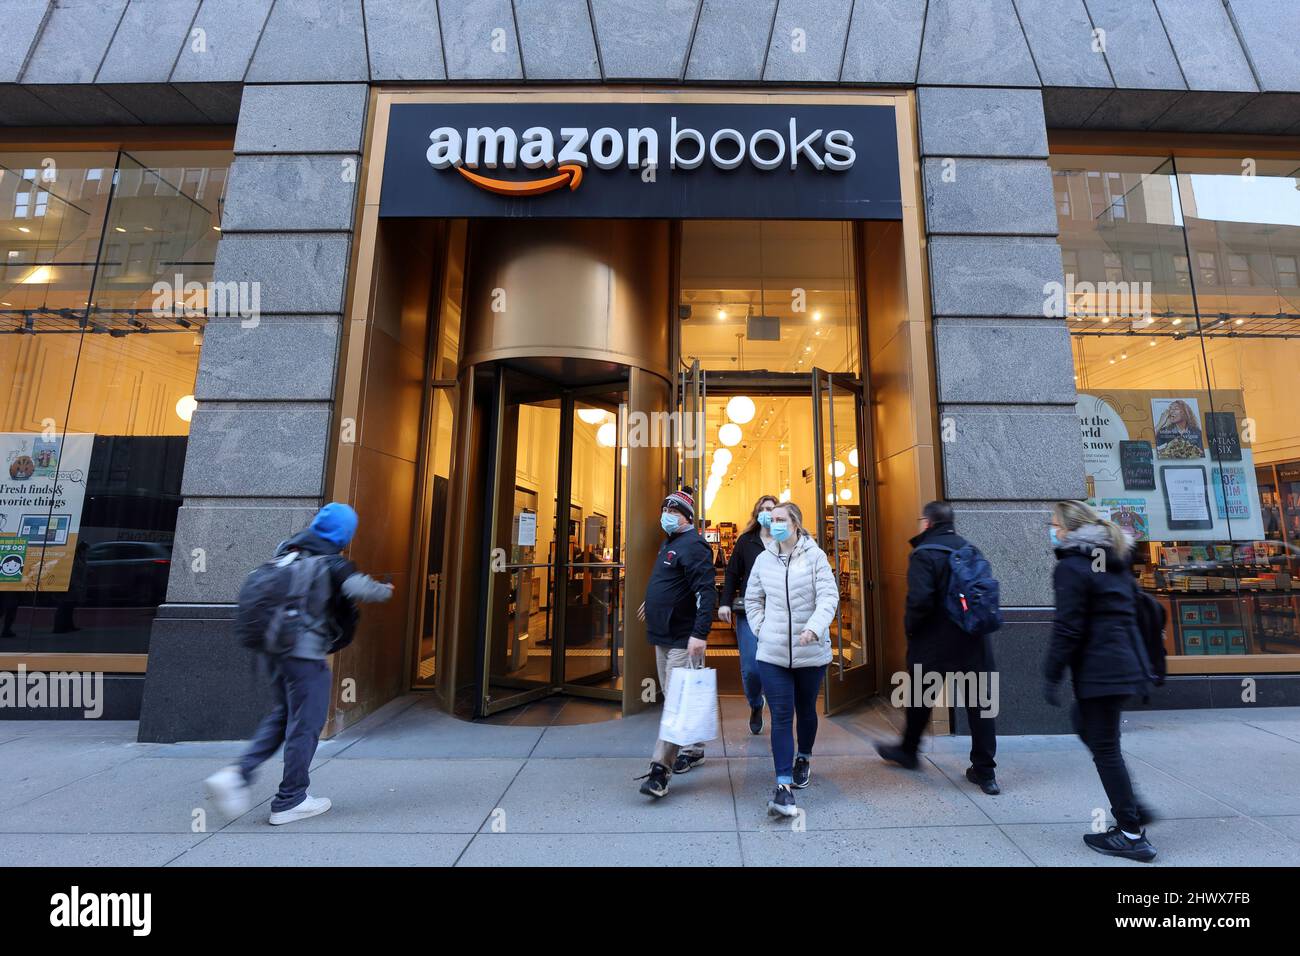 Historisches Schaufenster] eine Amazon Books Buchhandlung in einem  Einkaufszentrum in Columbus Circle in Manhattan, New York, NYC  Stockfotografie - Alamy